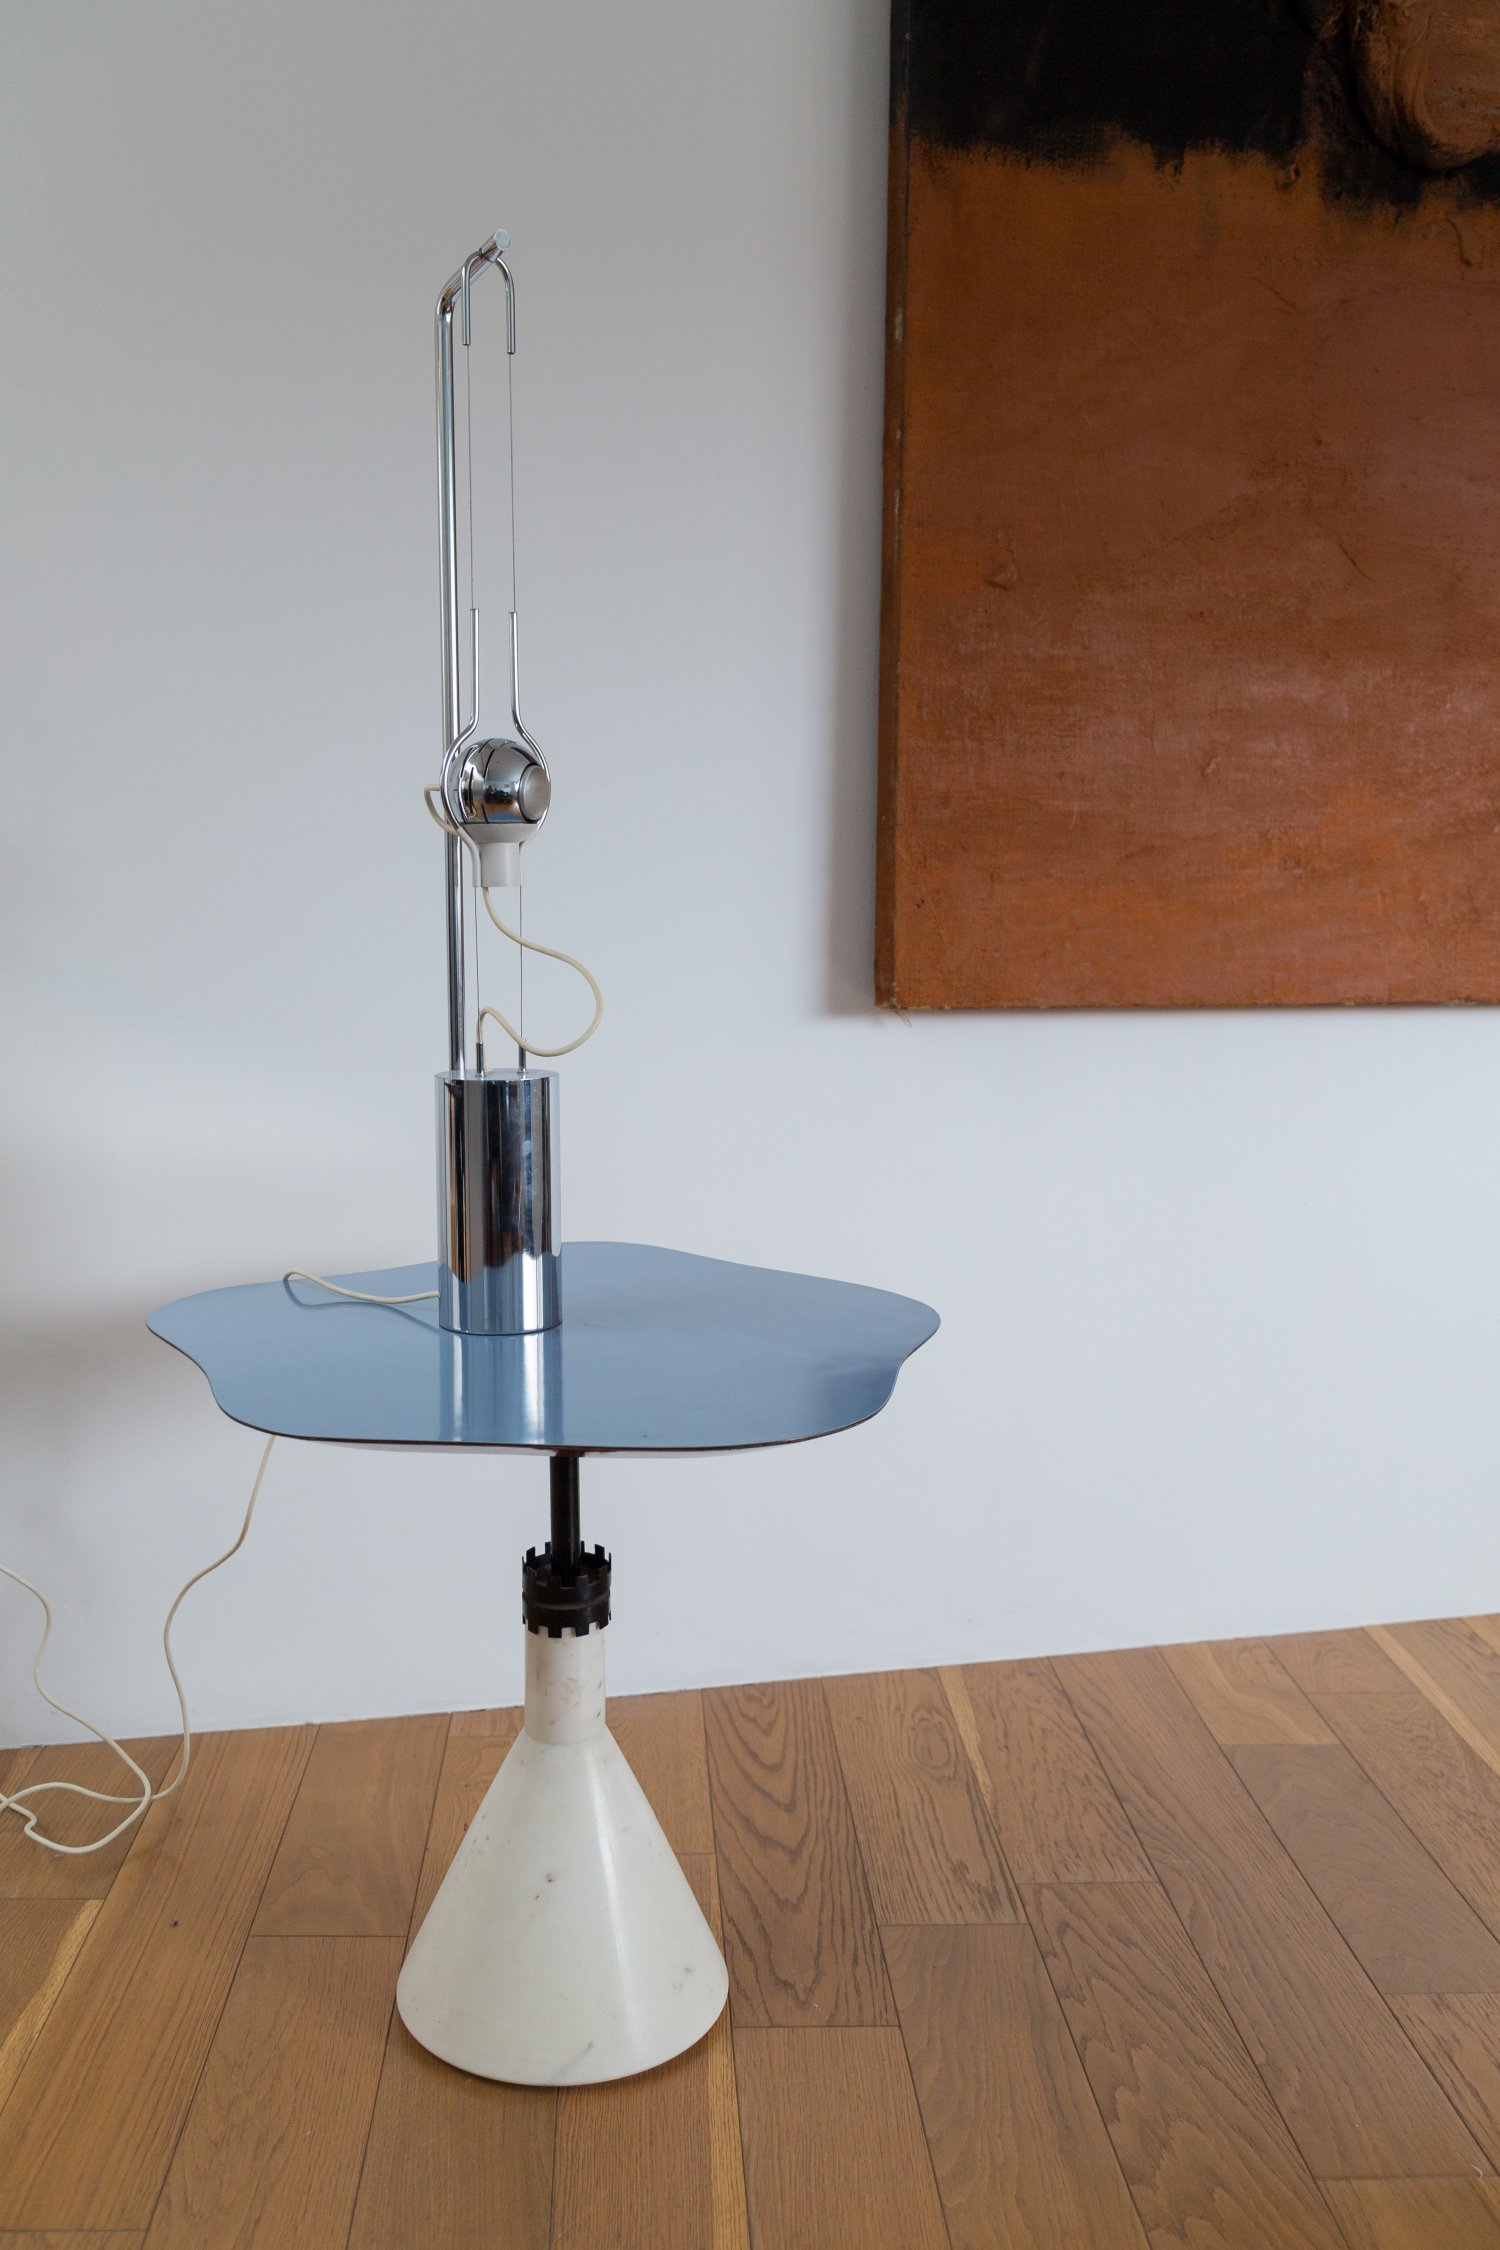 'Filo Sfera' lamp by Angelo Lelii for Arredoluce